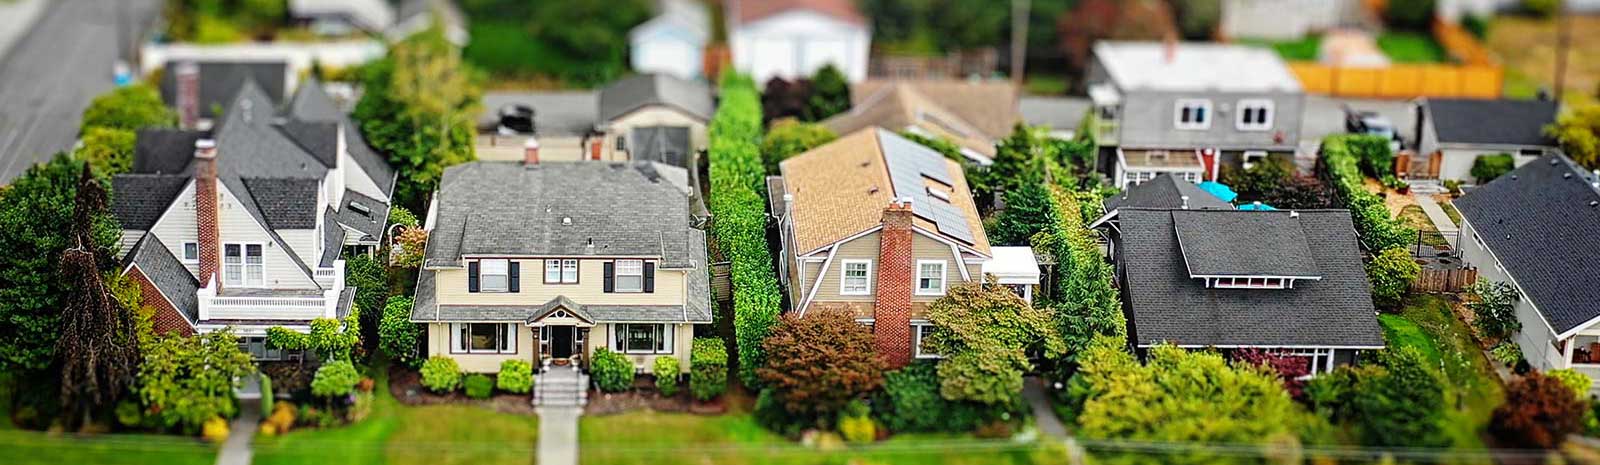 Tilt shift photo of neighborhood houses.